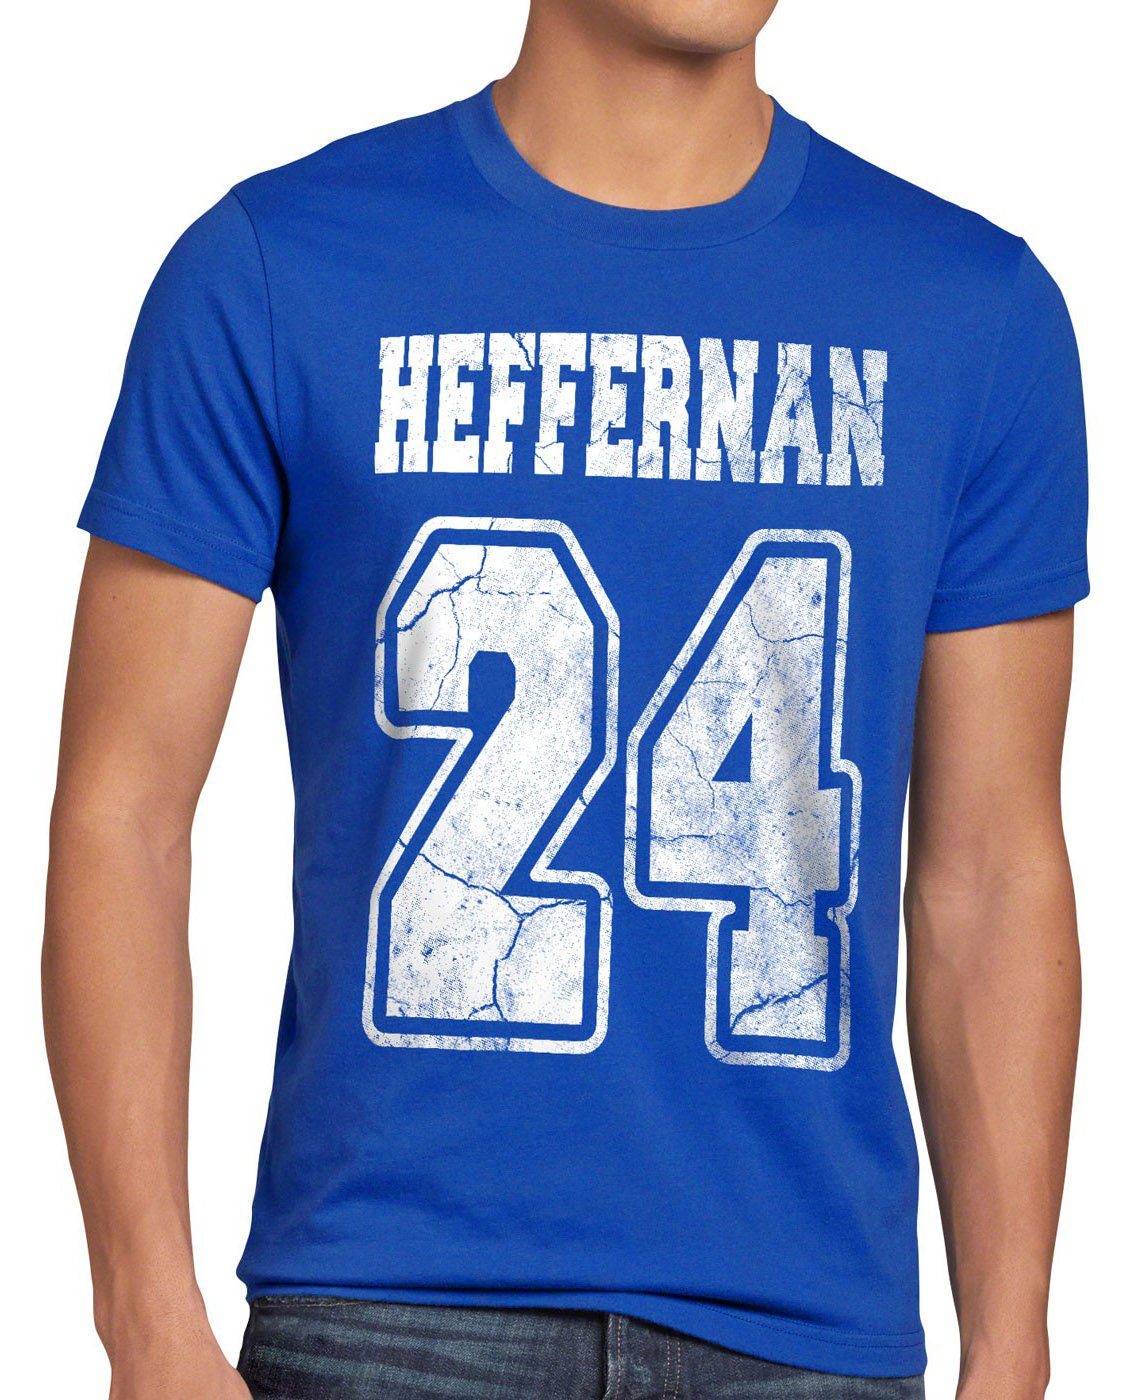 style3 Print-Shirt Herren T-Shirt Heffernan doug 24 sitcom coopers blau IPS queens the of king spooner